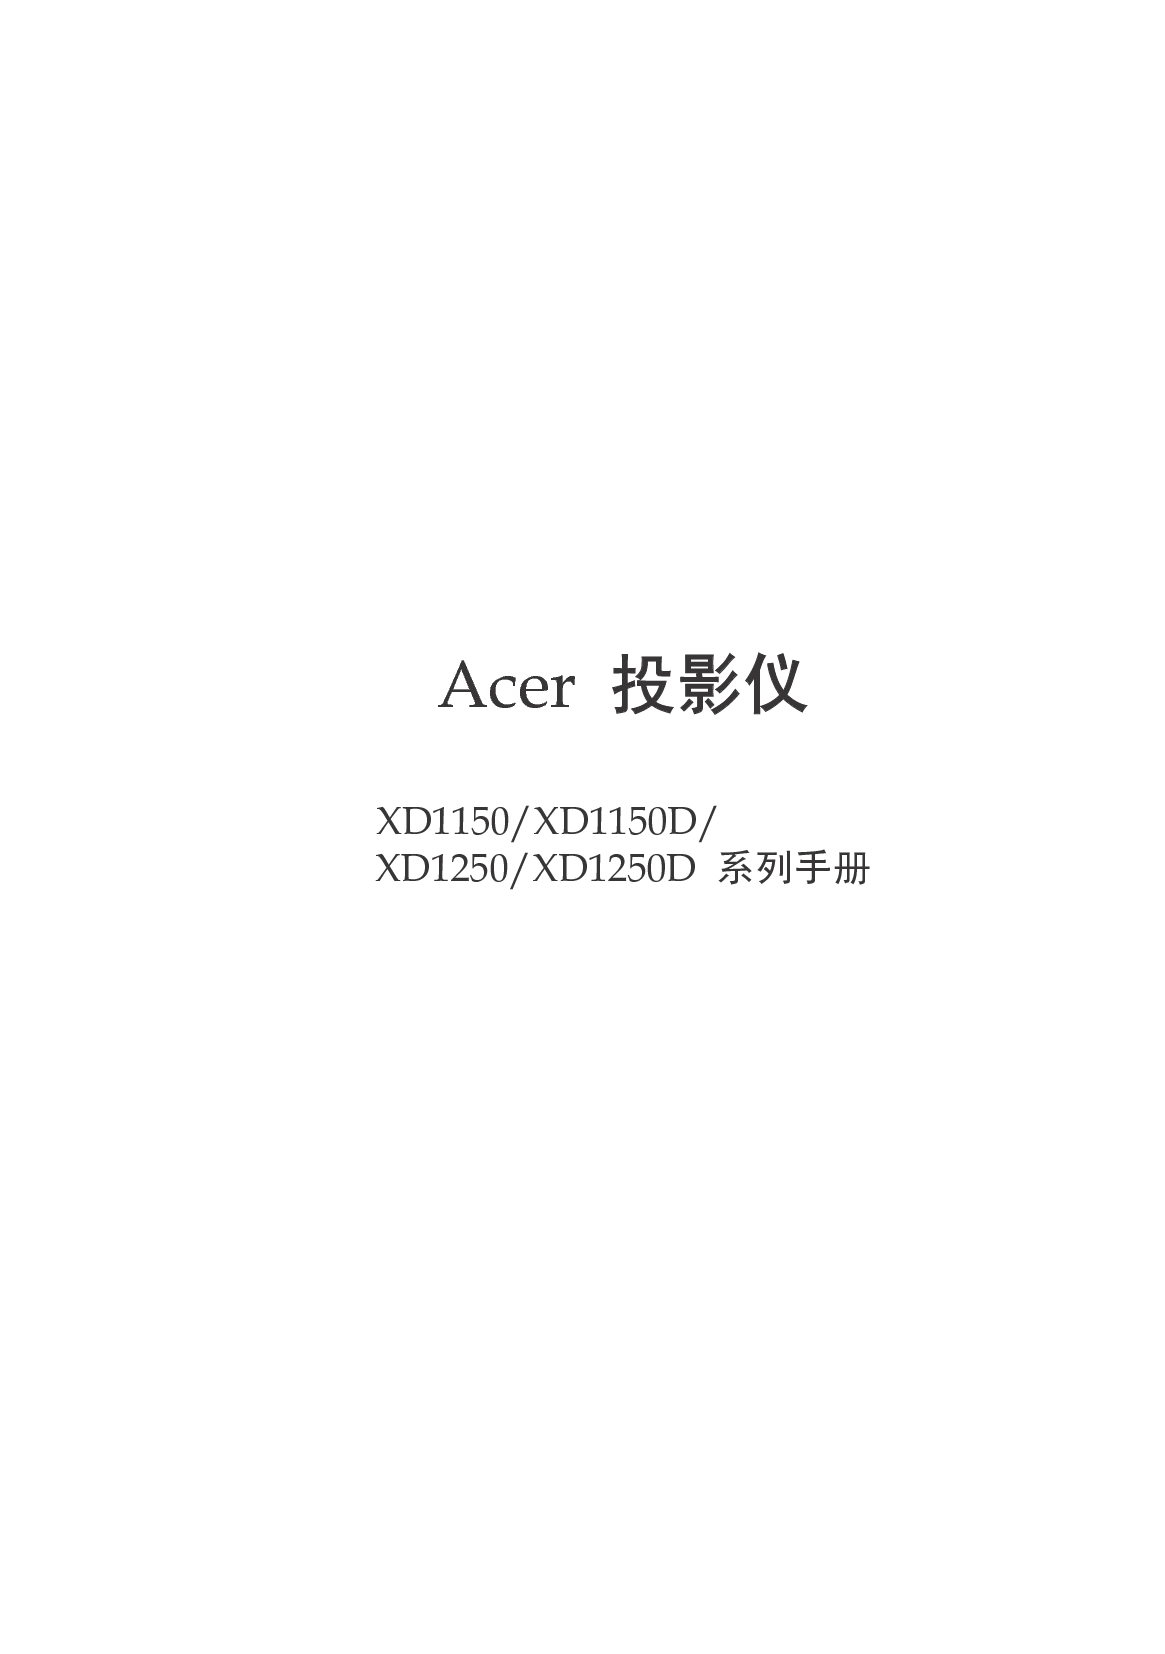 宏基 Acer XD1150 用户手册 封面